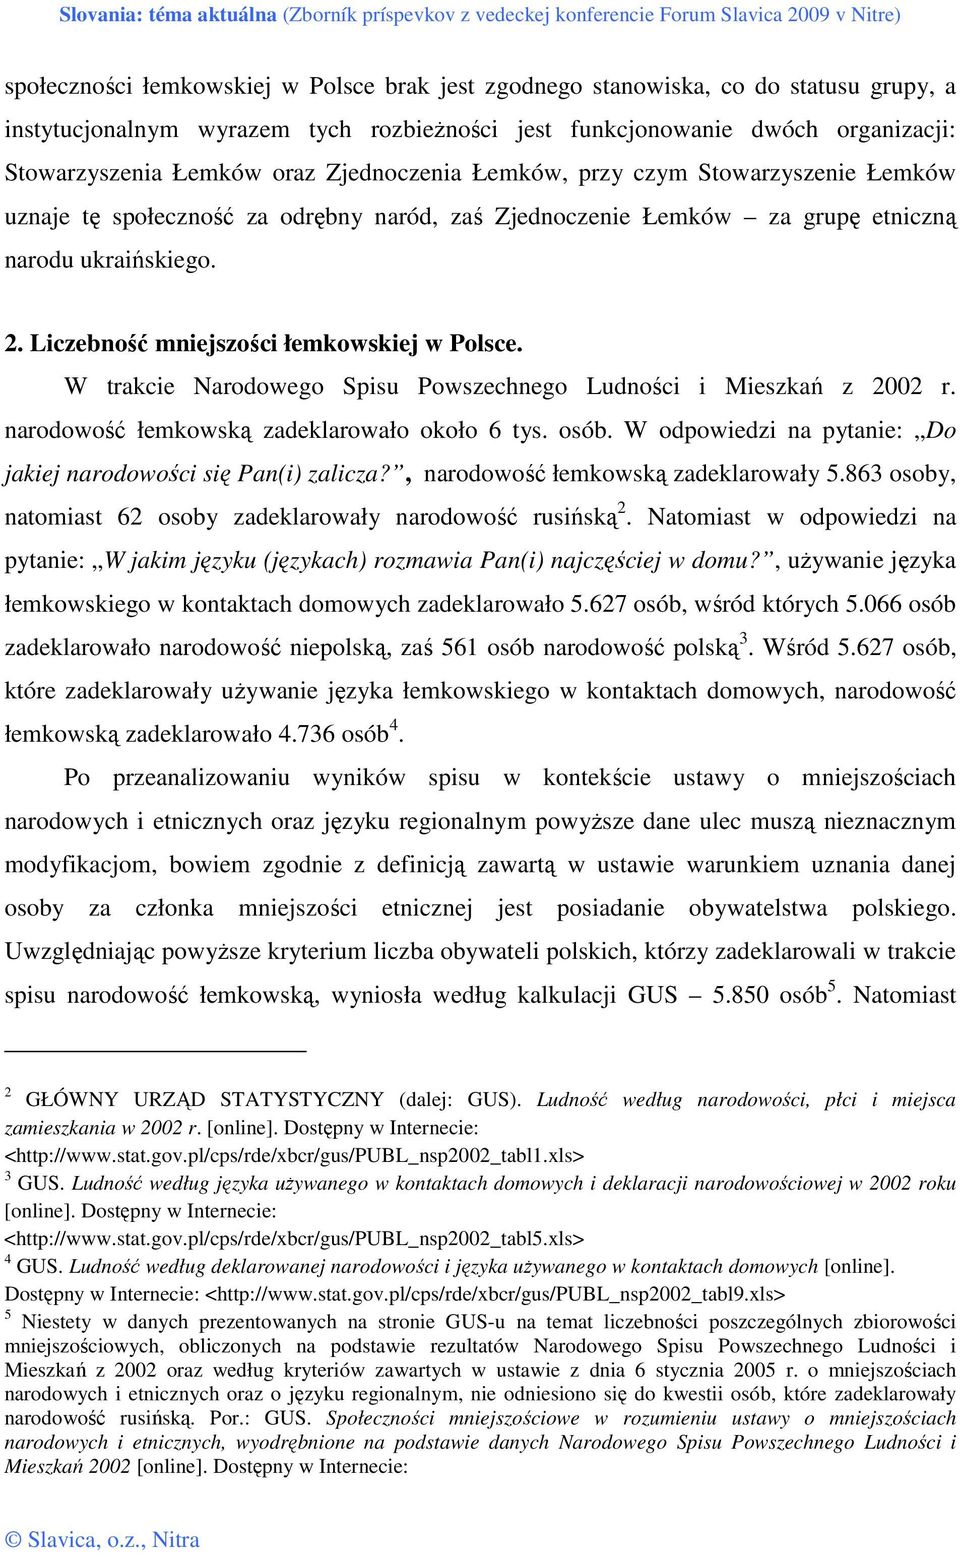 Liczebność mniejszości łemkowskiej w Polsce. W trakcie Narodowego Spisu Powszechnego Ludności i Mieszkań z 2002 r. narodowość łemkowską zadeklarowało około 6 tys. osób.